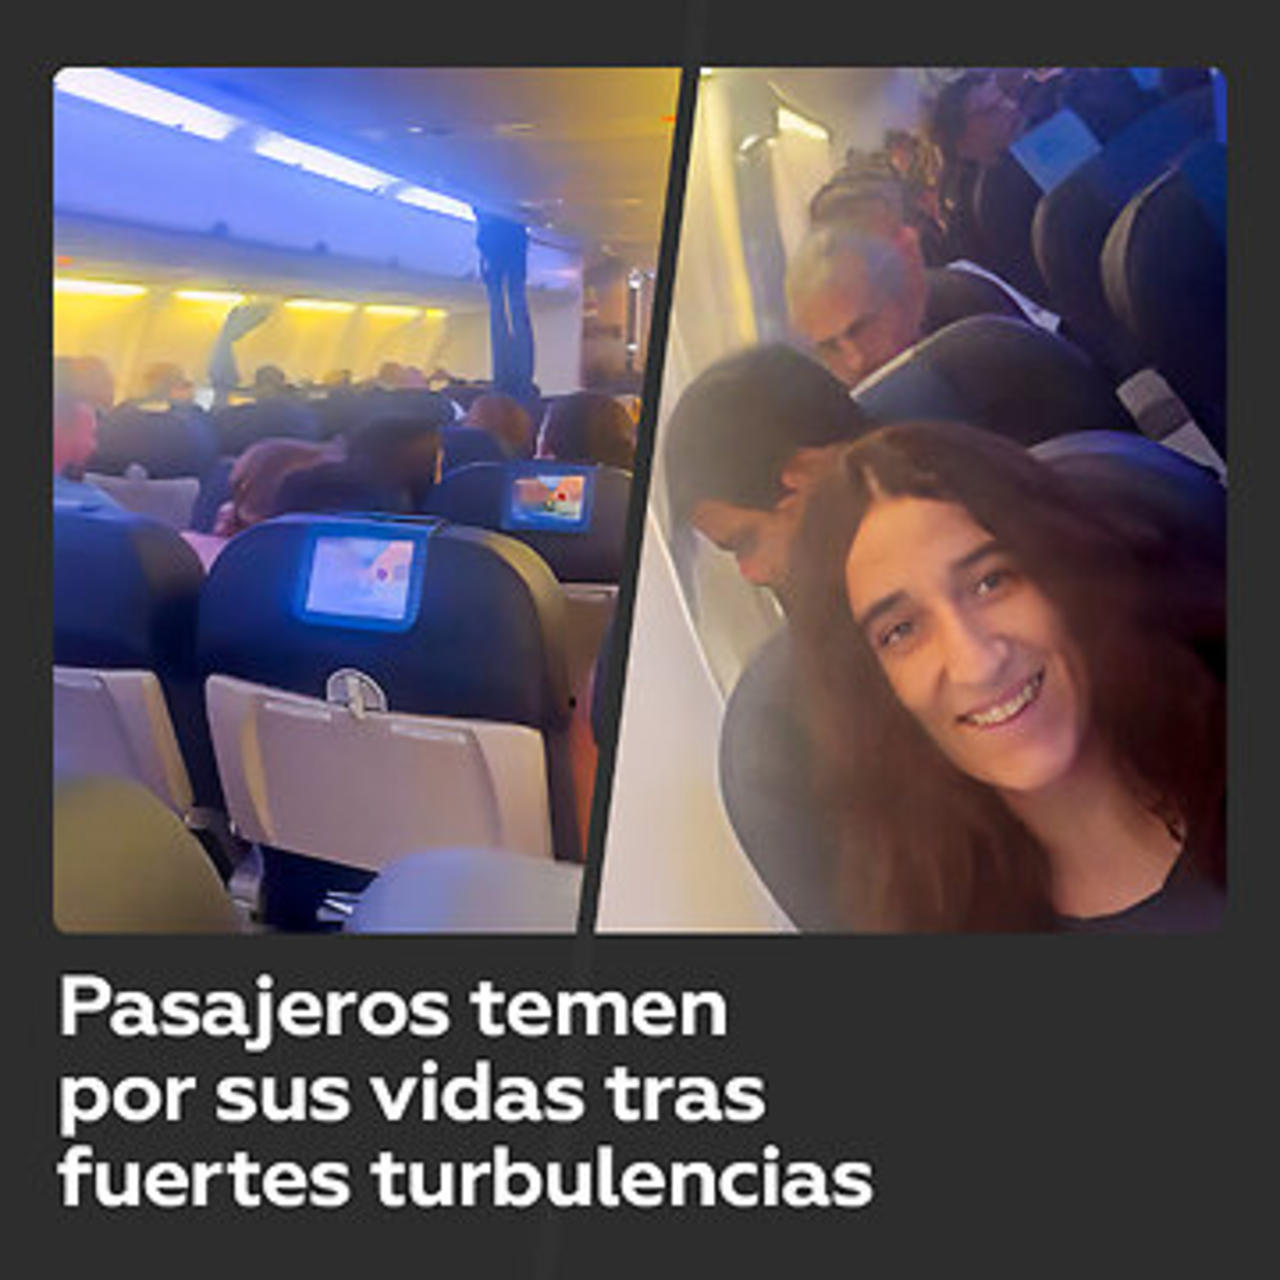 Turbulencias en un vuelo hacia Mallorca causa pánico entre pasajeros